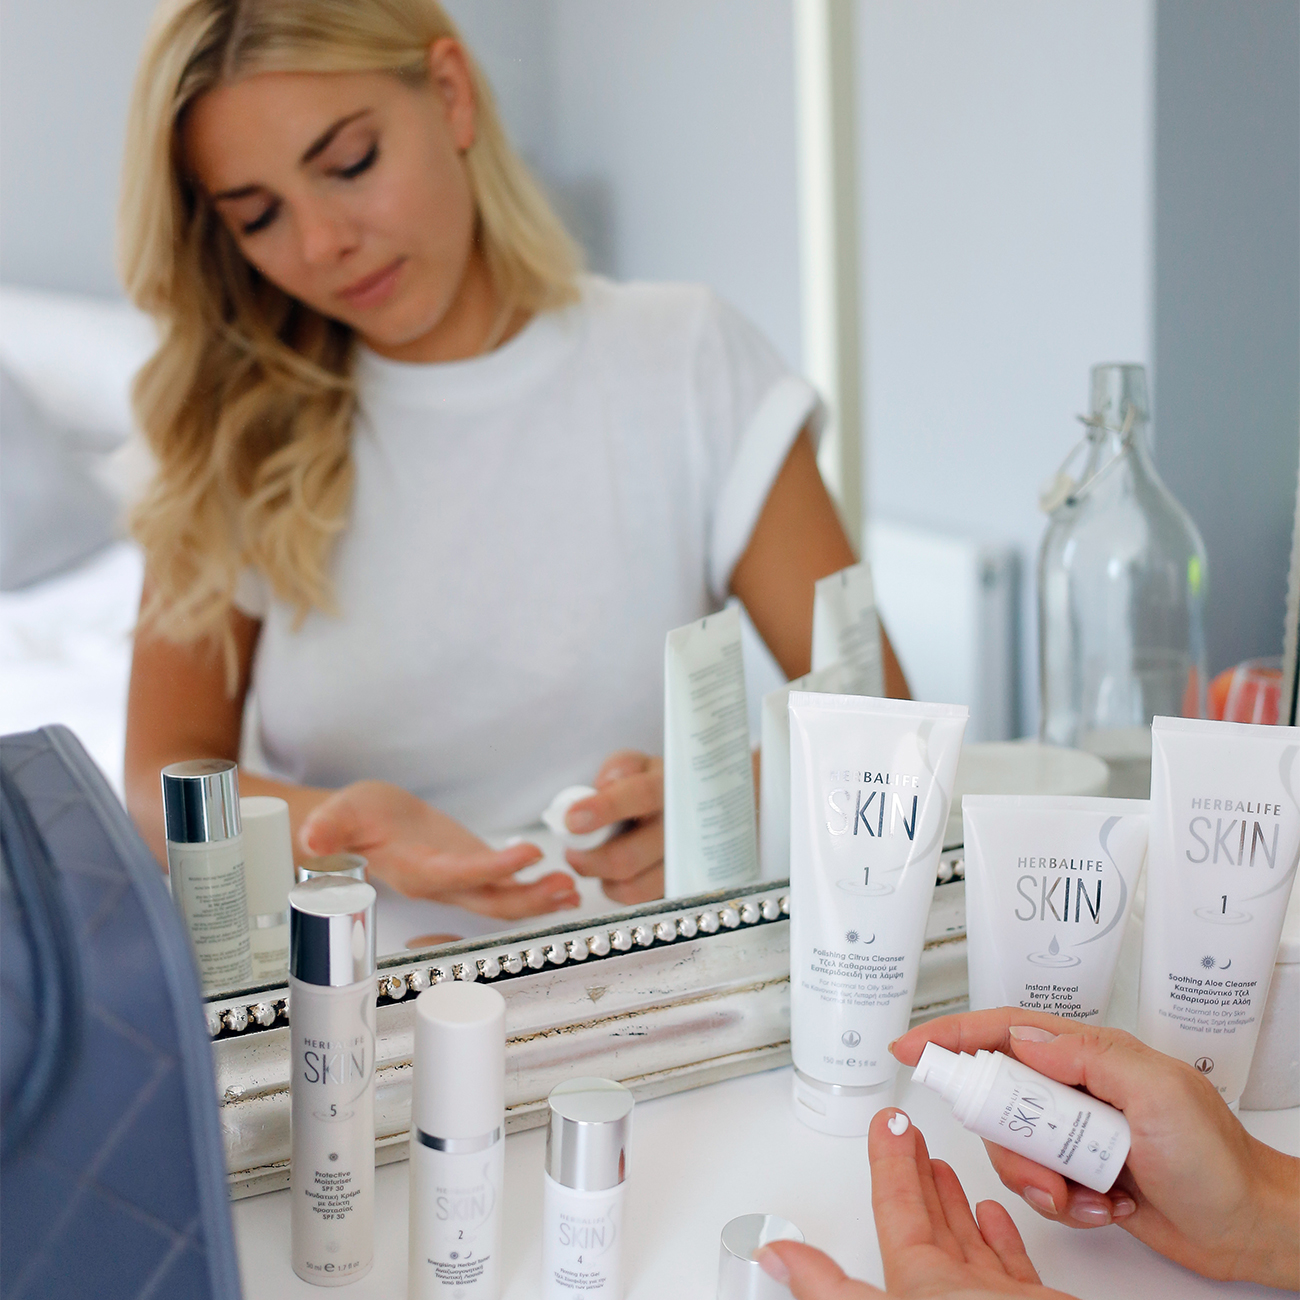 Μια γυναίκα μπροστά σε καθρέπτη χρησιμοποιεί τα προϊόντα της σειράς Herbalife Skin.